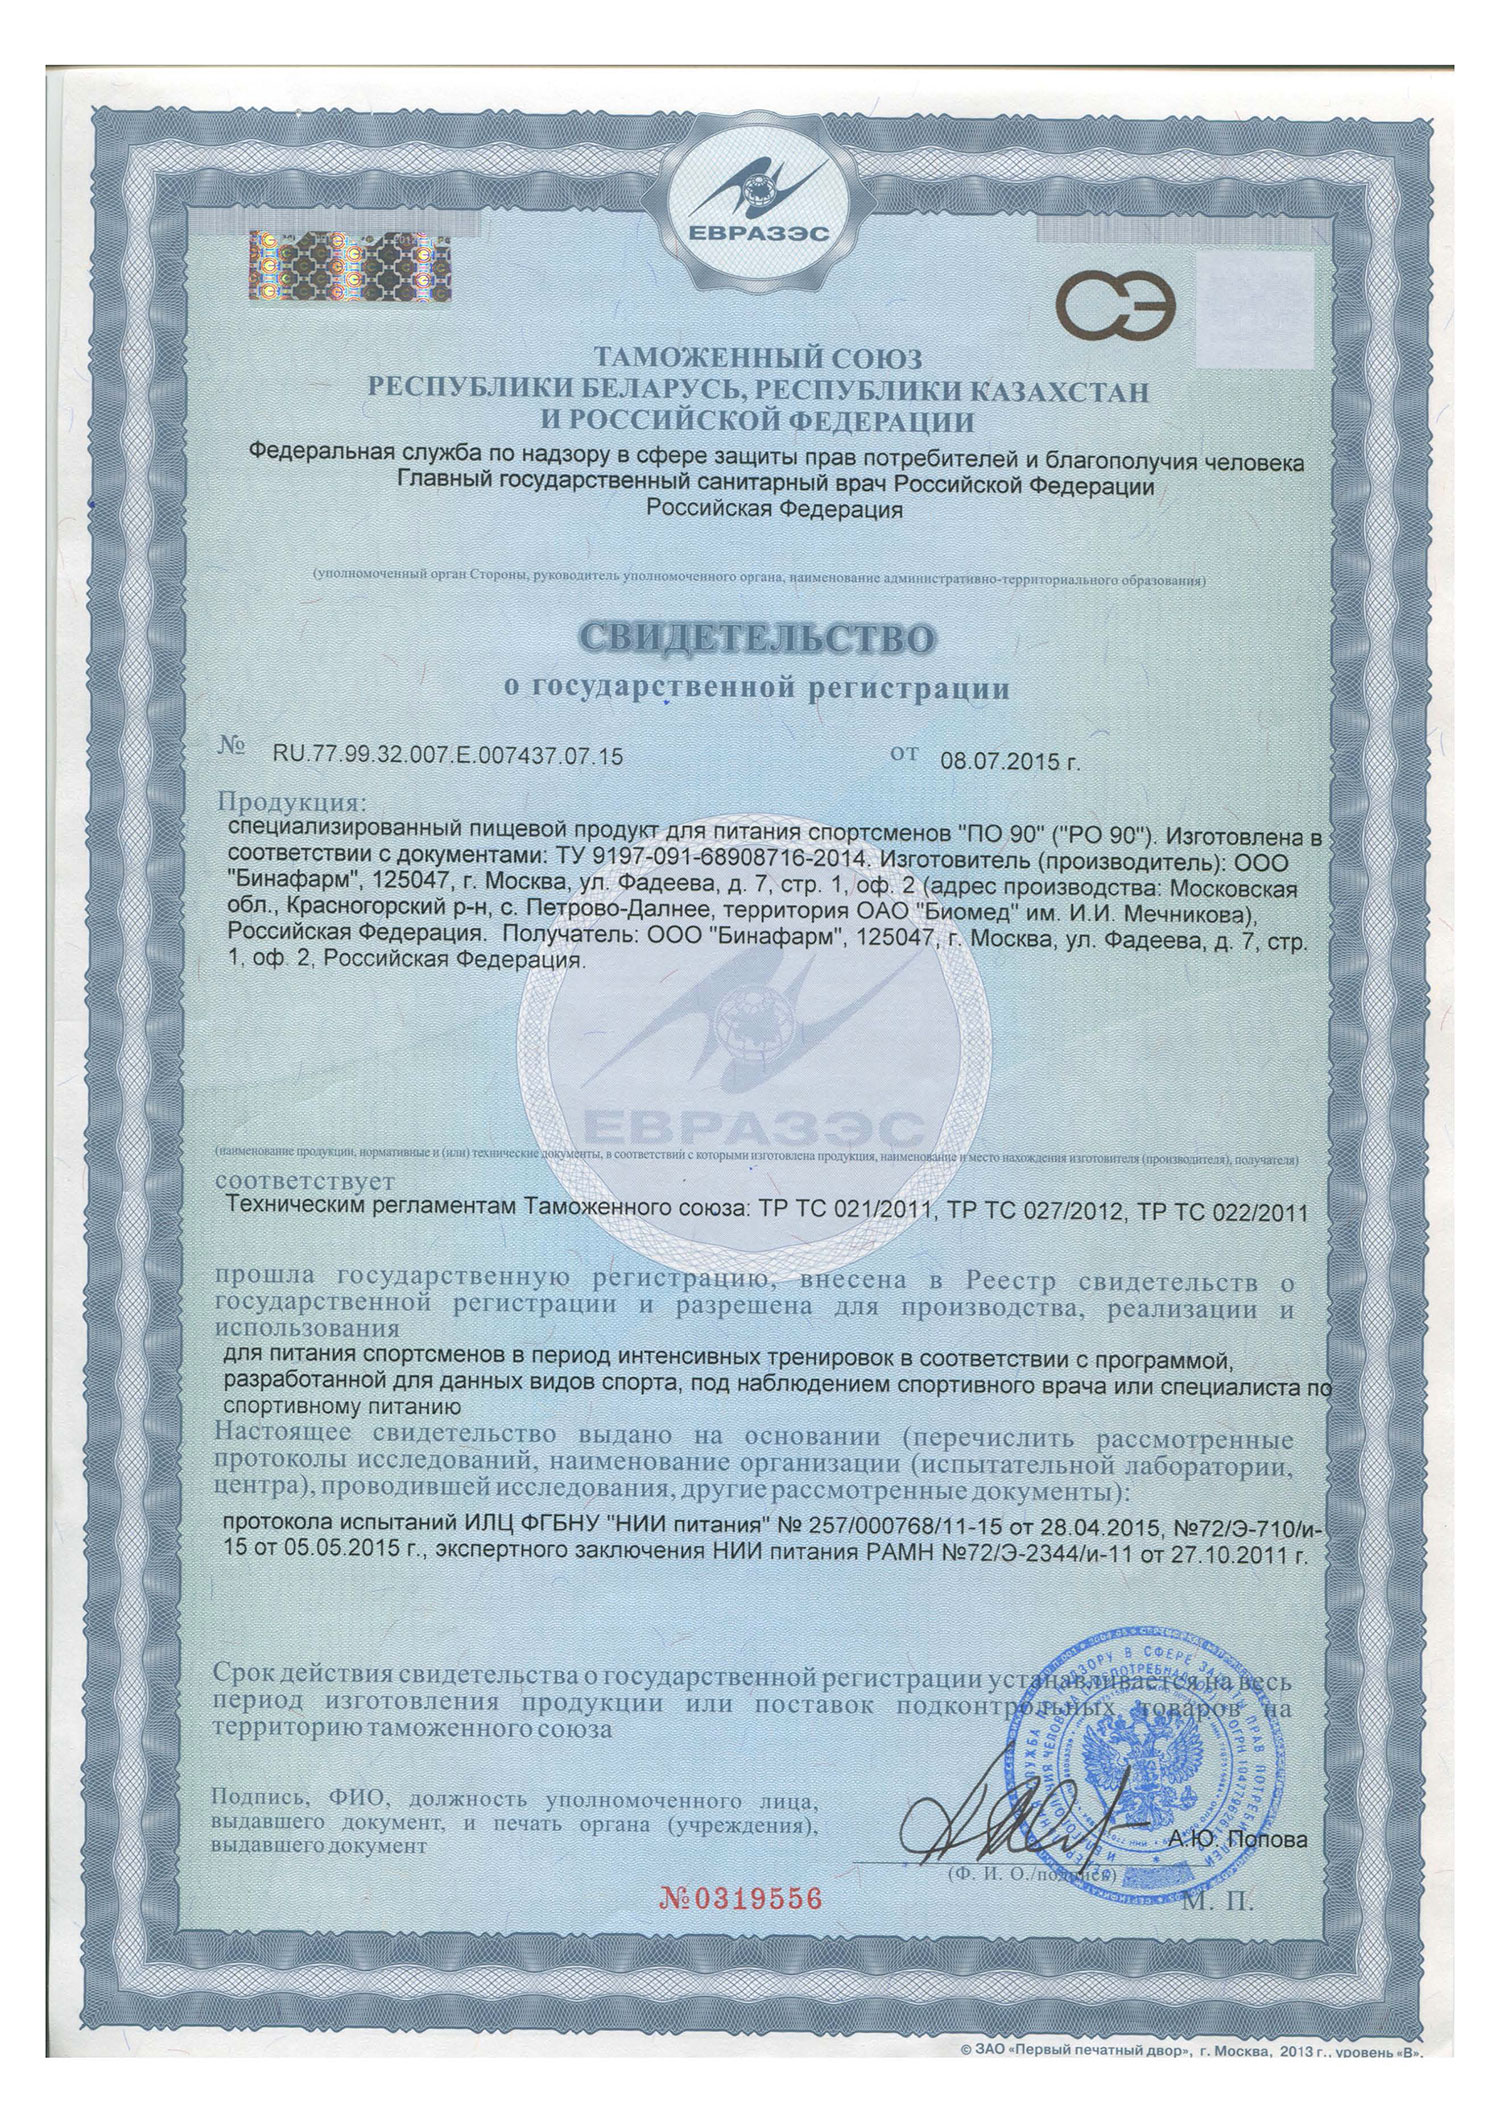 Сертификат ПО-90  